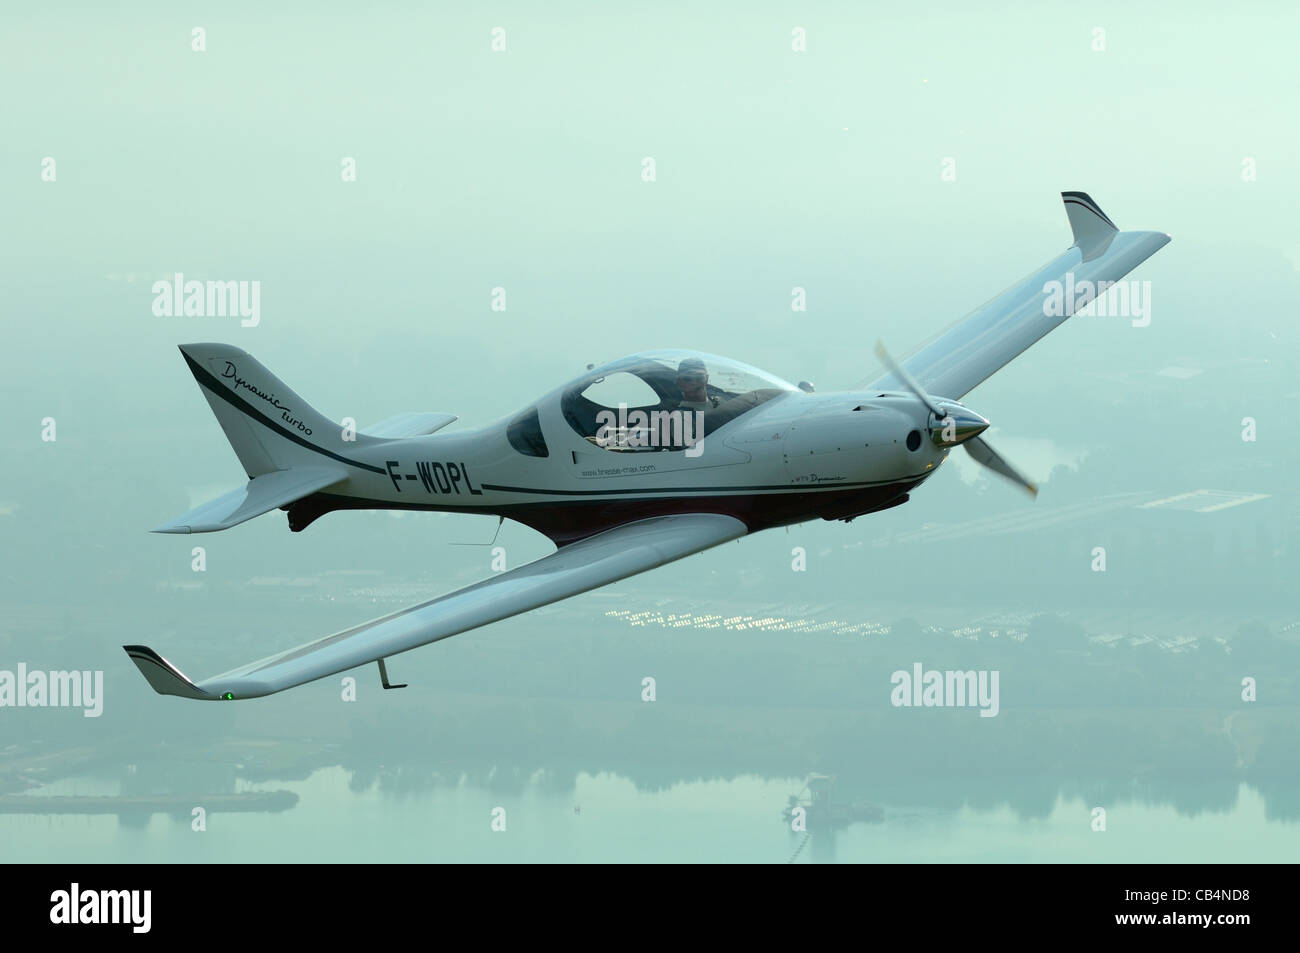 Petit Aerospool LSA Européen sport Turbo Dynamique avion survolant Rhineriver terre, France Banque D'Images